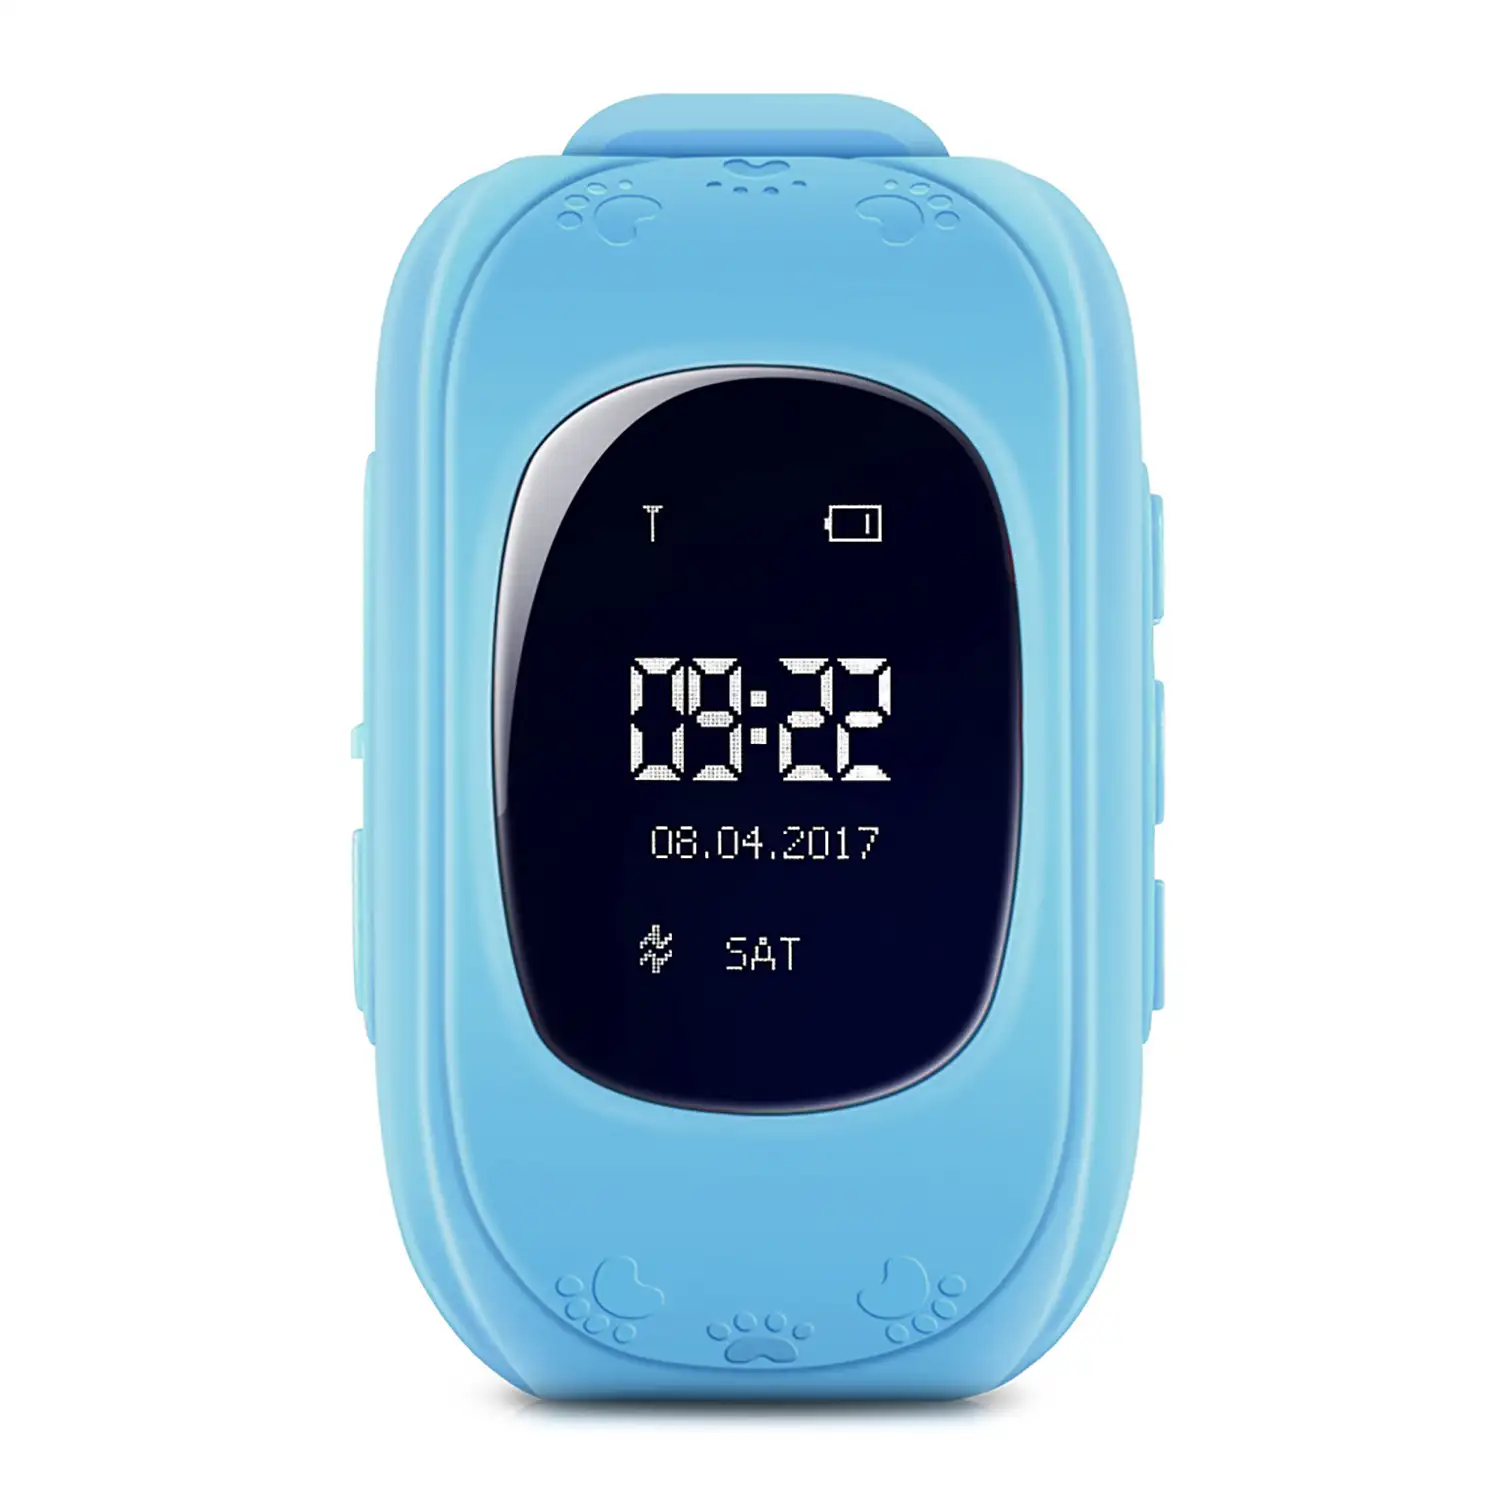 Smartwatch LBS especial para niños, con función de rastreo, llamadas SOS y recepción de llamada